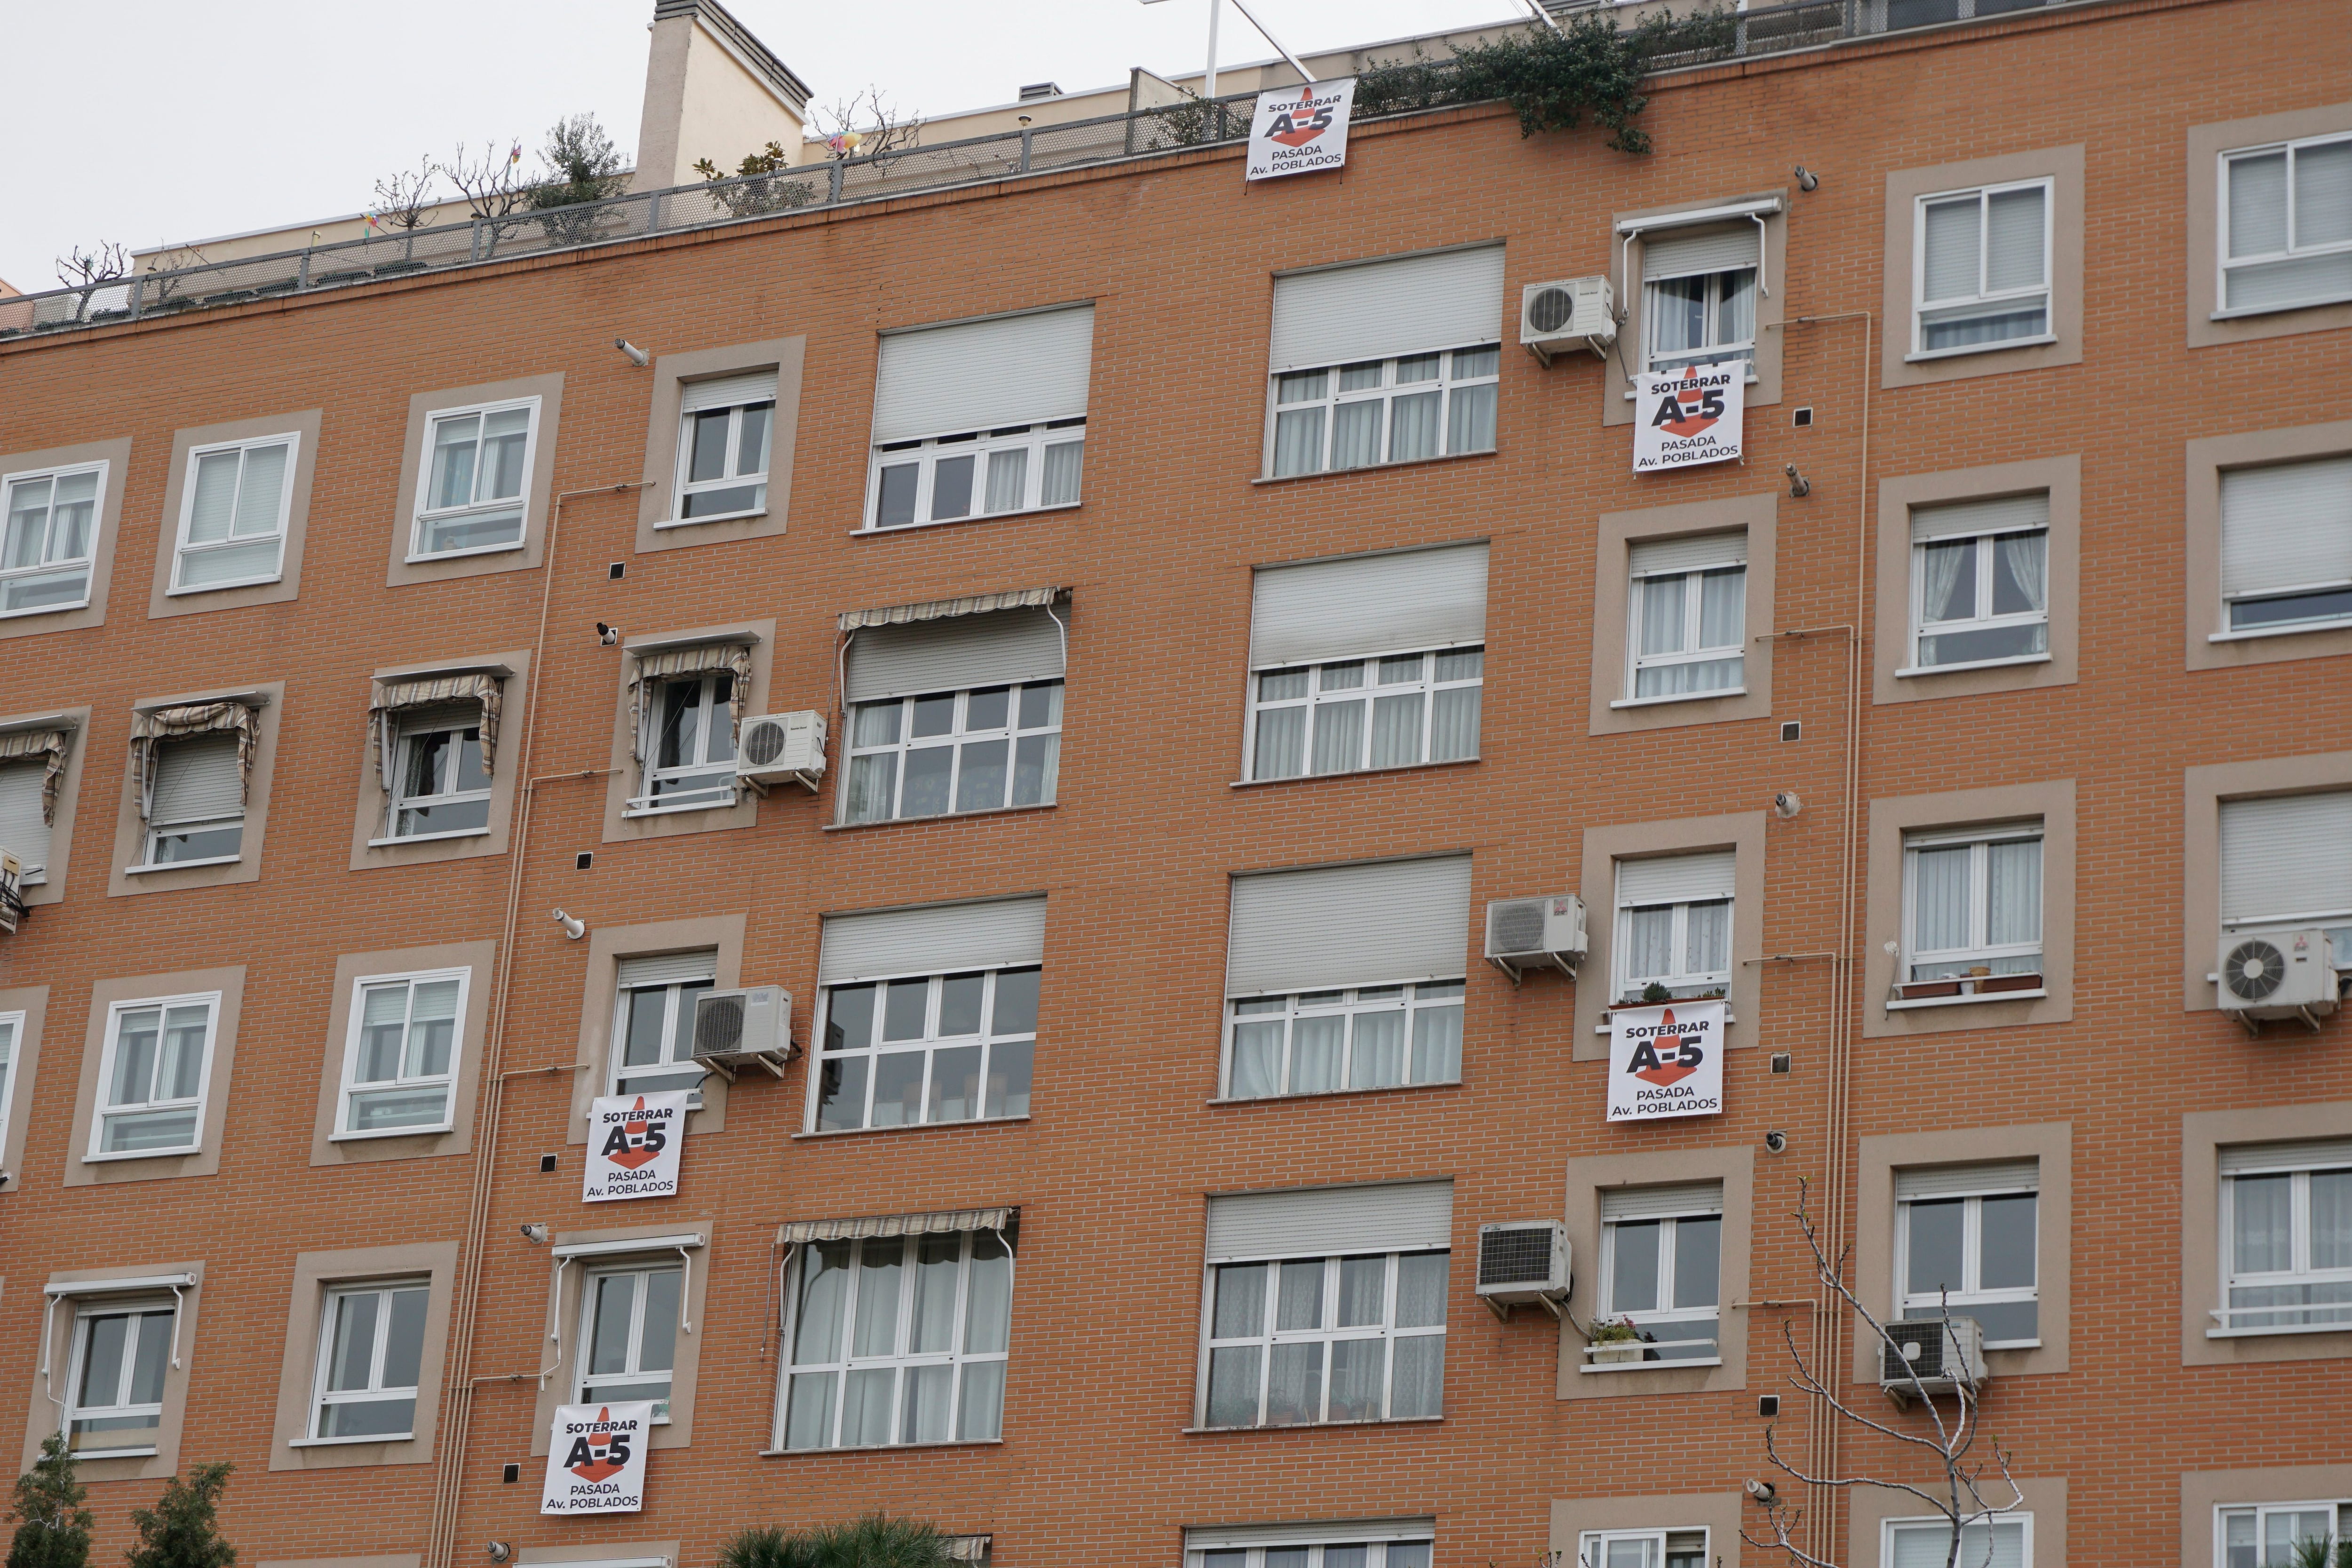 Viviendas frente a la A-5 cuelgan carteles que piden soterrar la carretera hasta la Avenida de los Poblados (Infobae España)